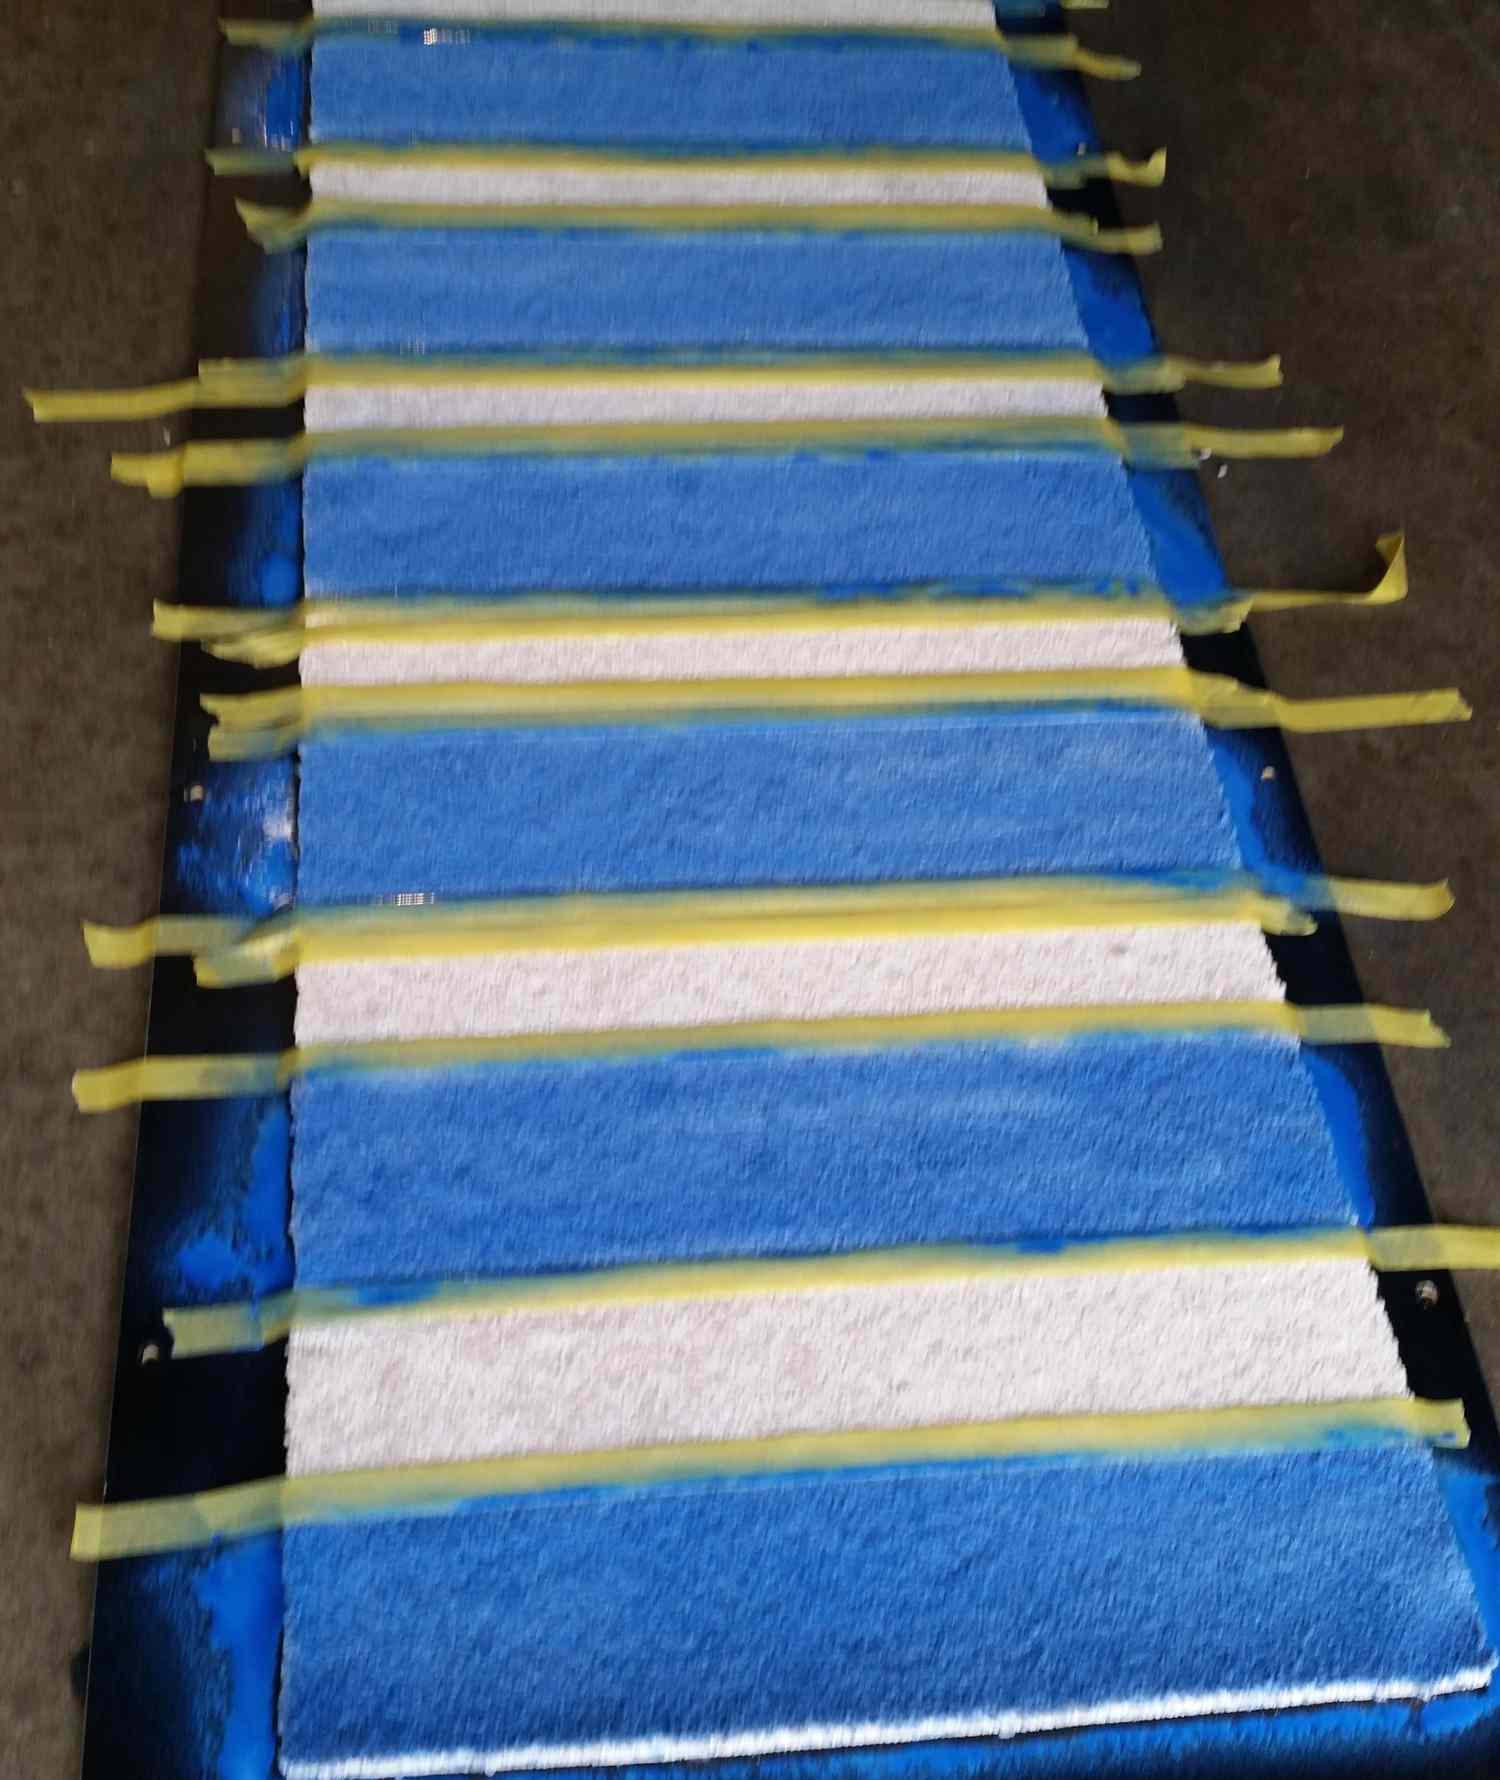 Tapete de carpete com pontas de tinta azul aplicadas entre os tapetes